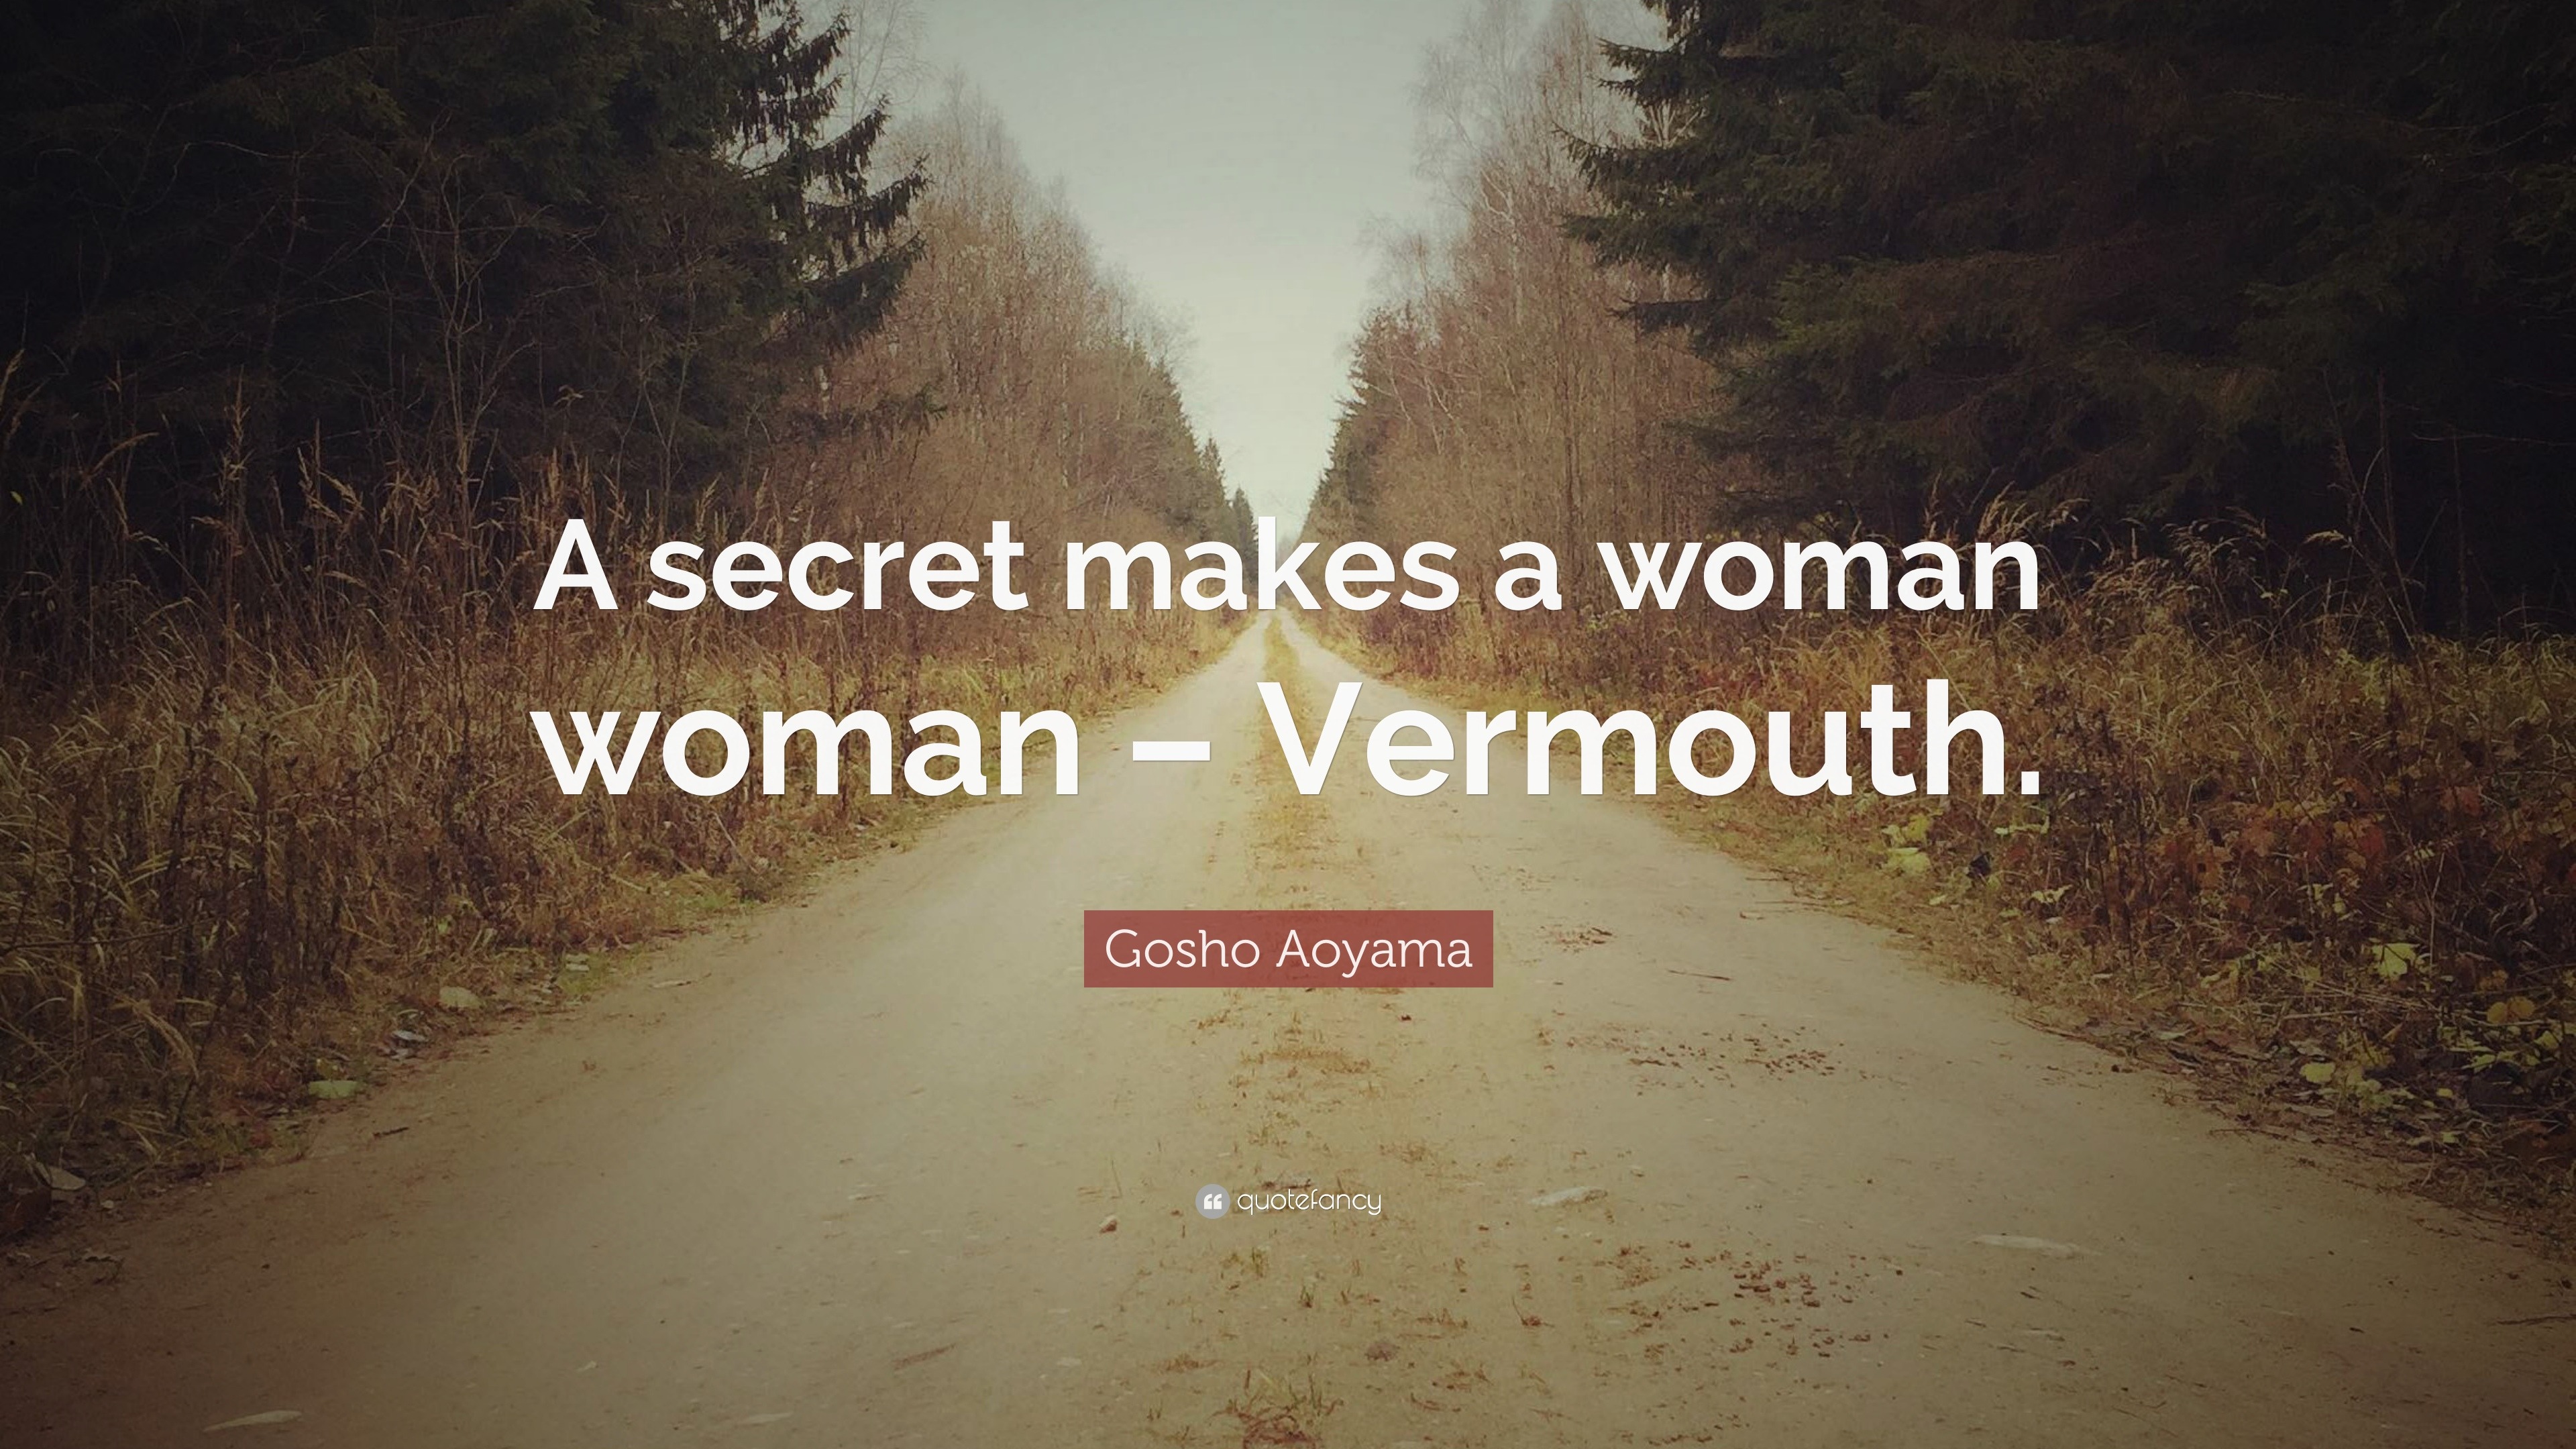 A secret makes a woman woman